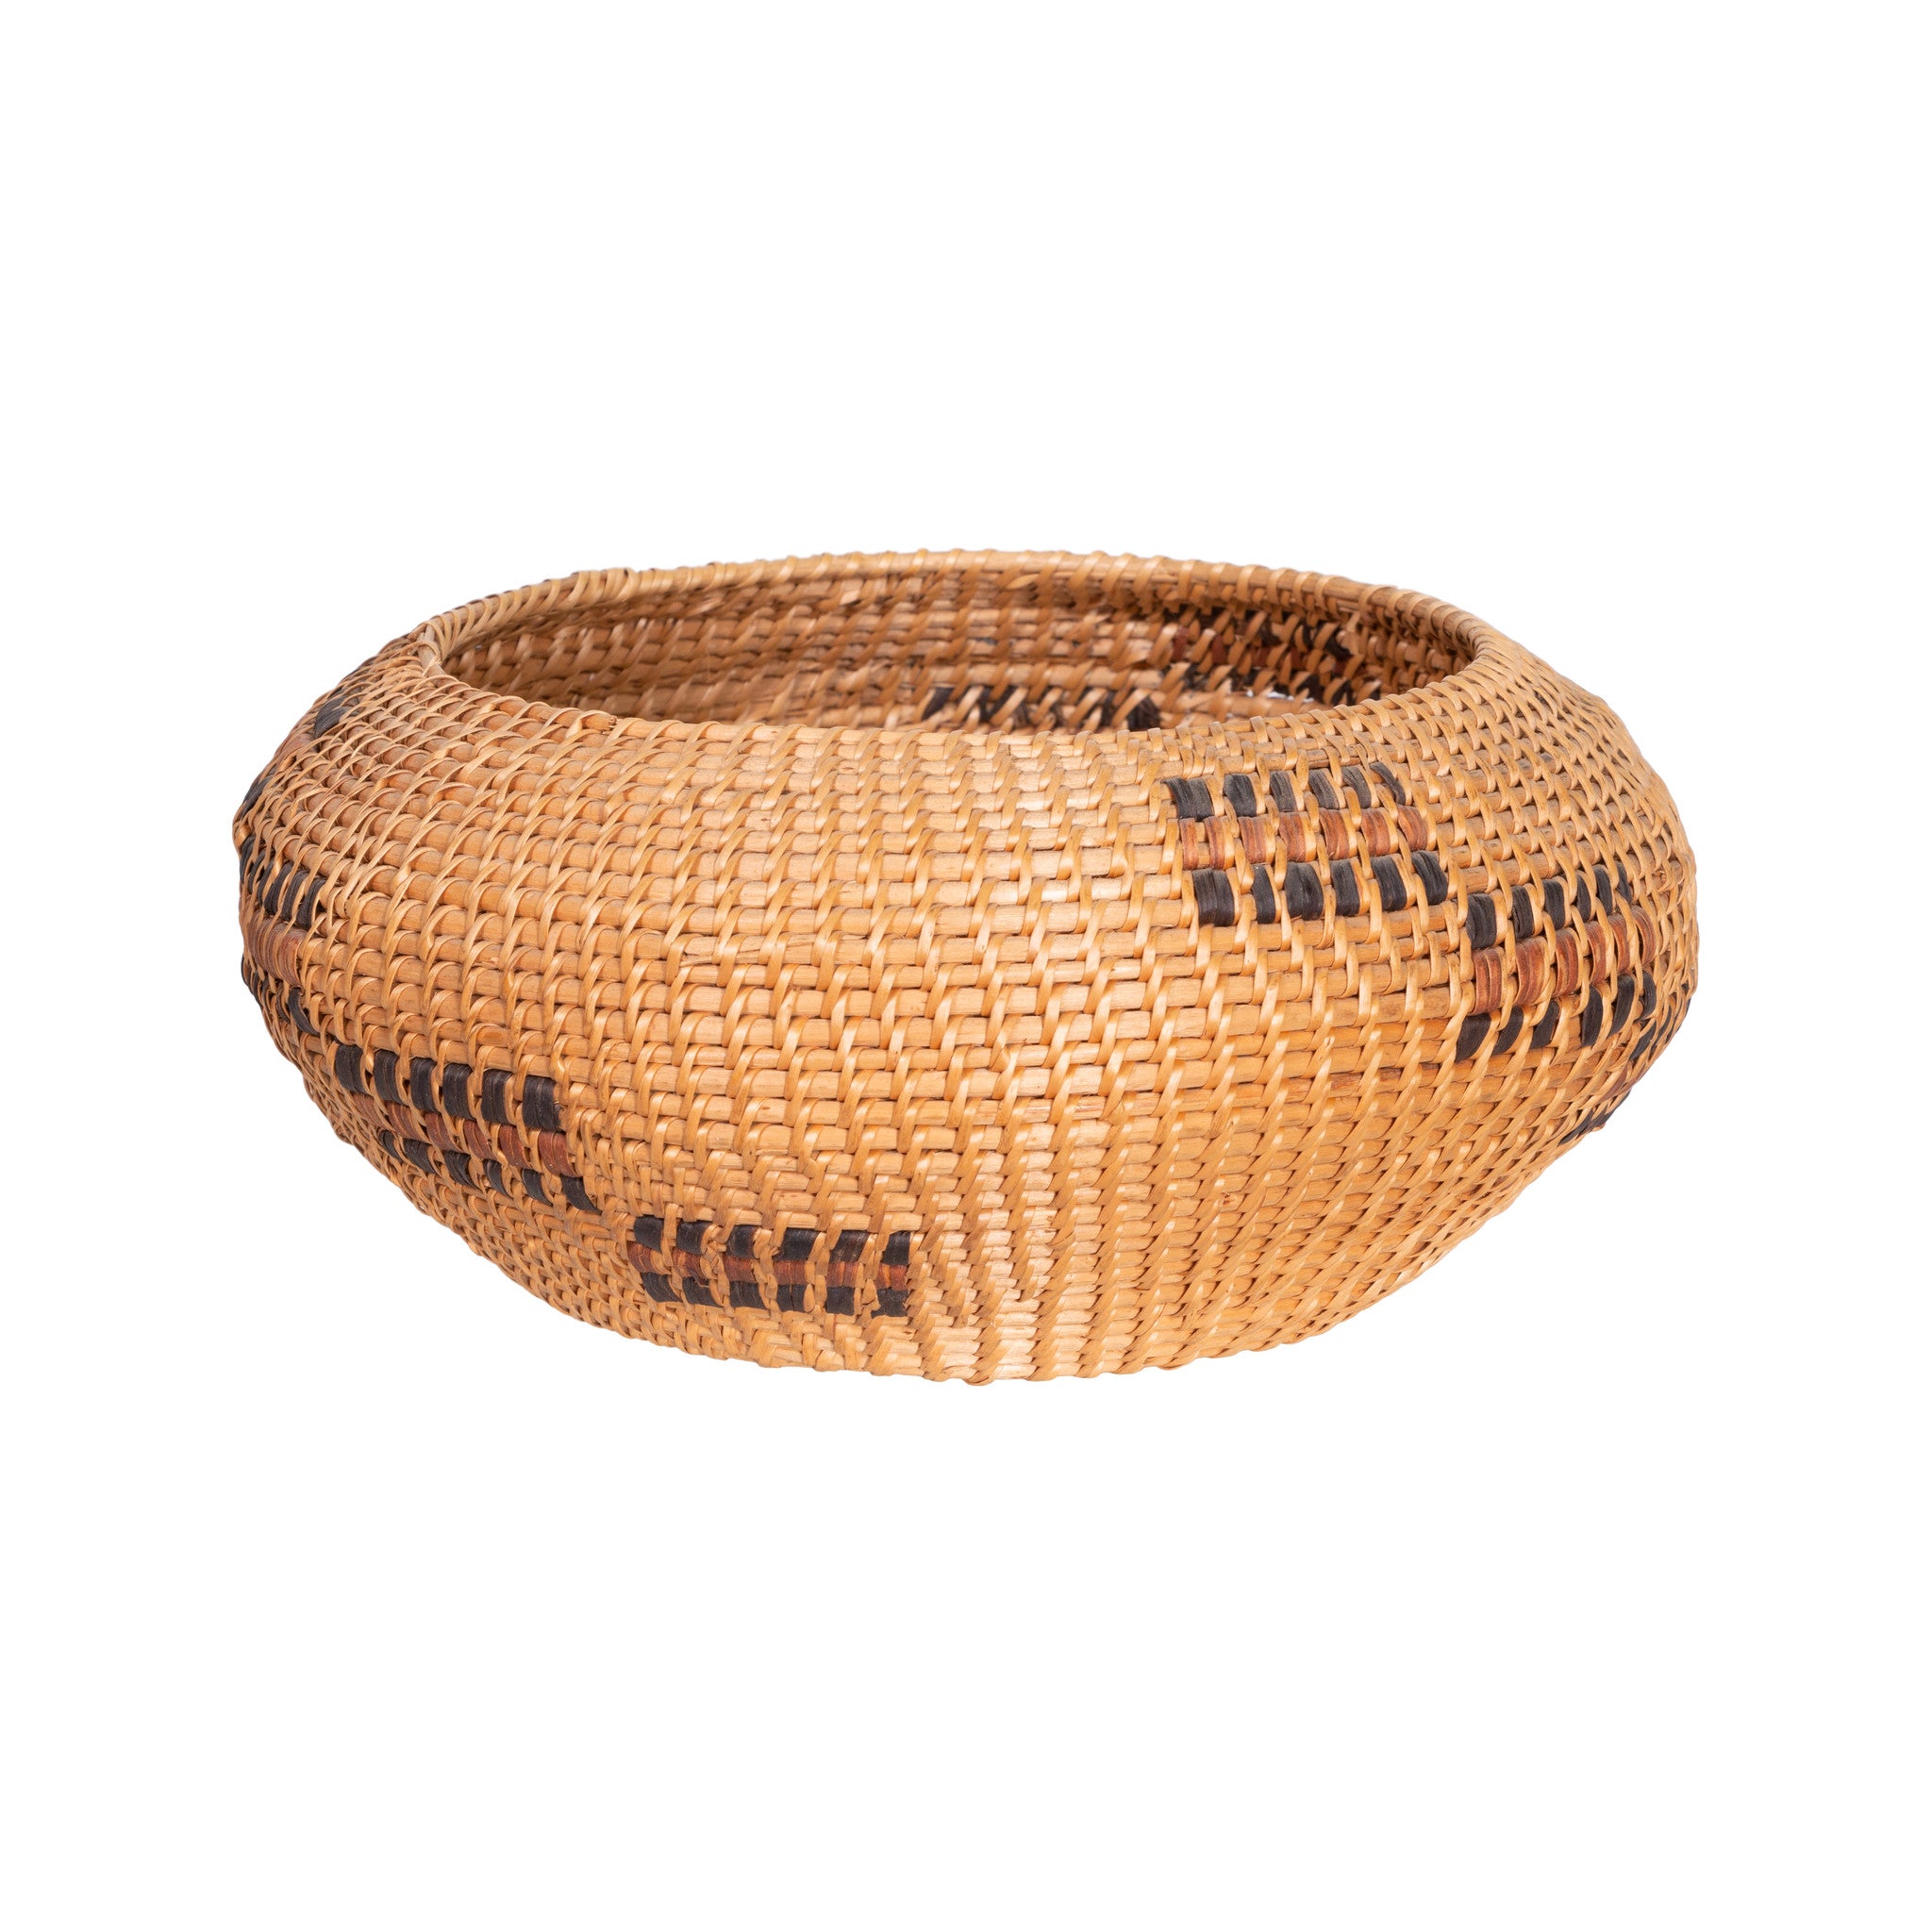 Washoe Lidded Basket